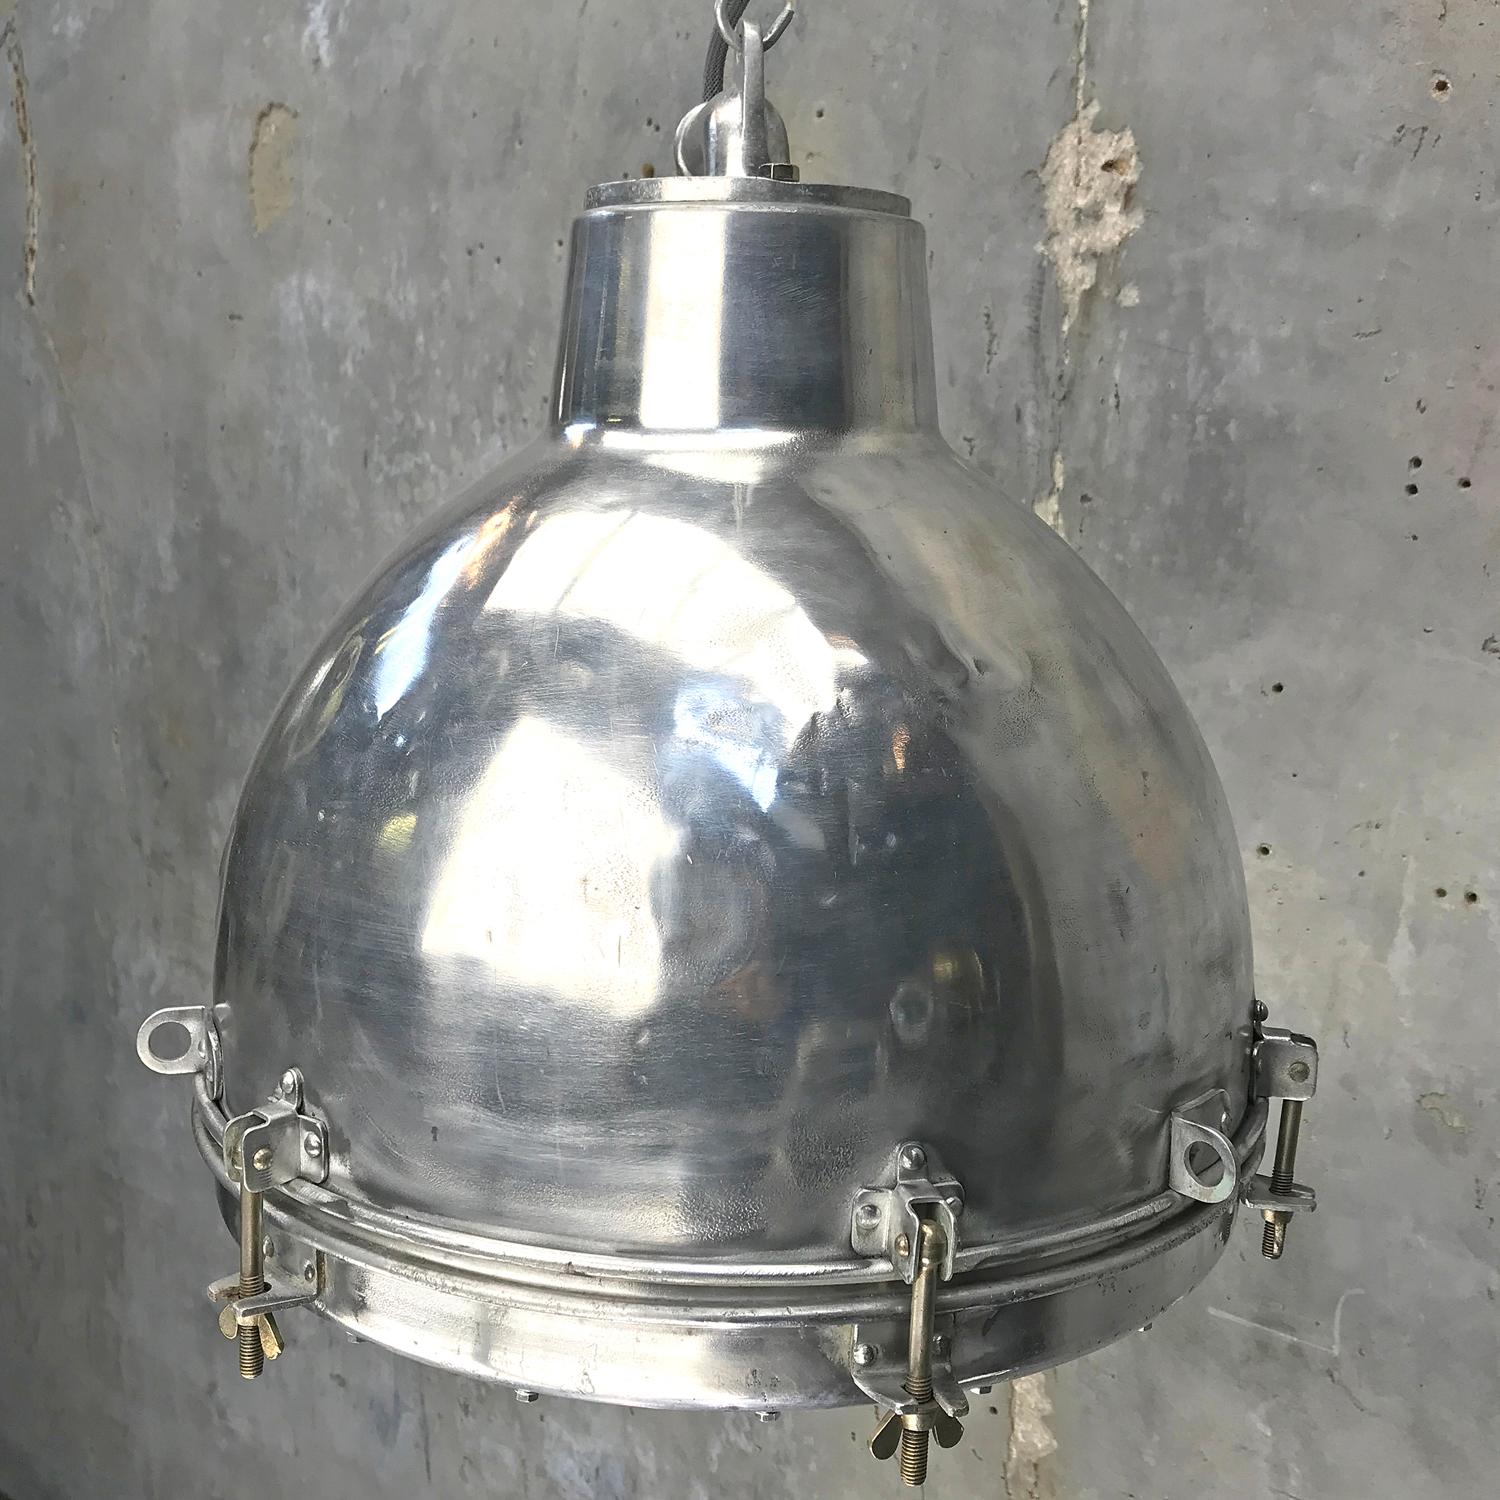 Aluminum 1970s Japanese Vintage Industrial Aluminium Dome Pendant - Convex Glass Shade